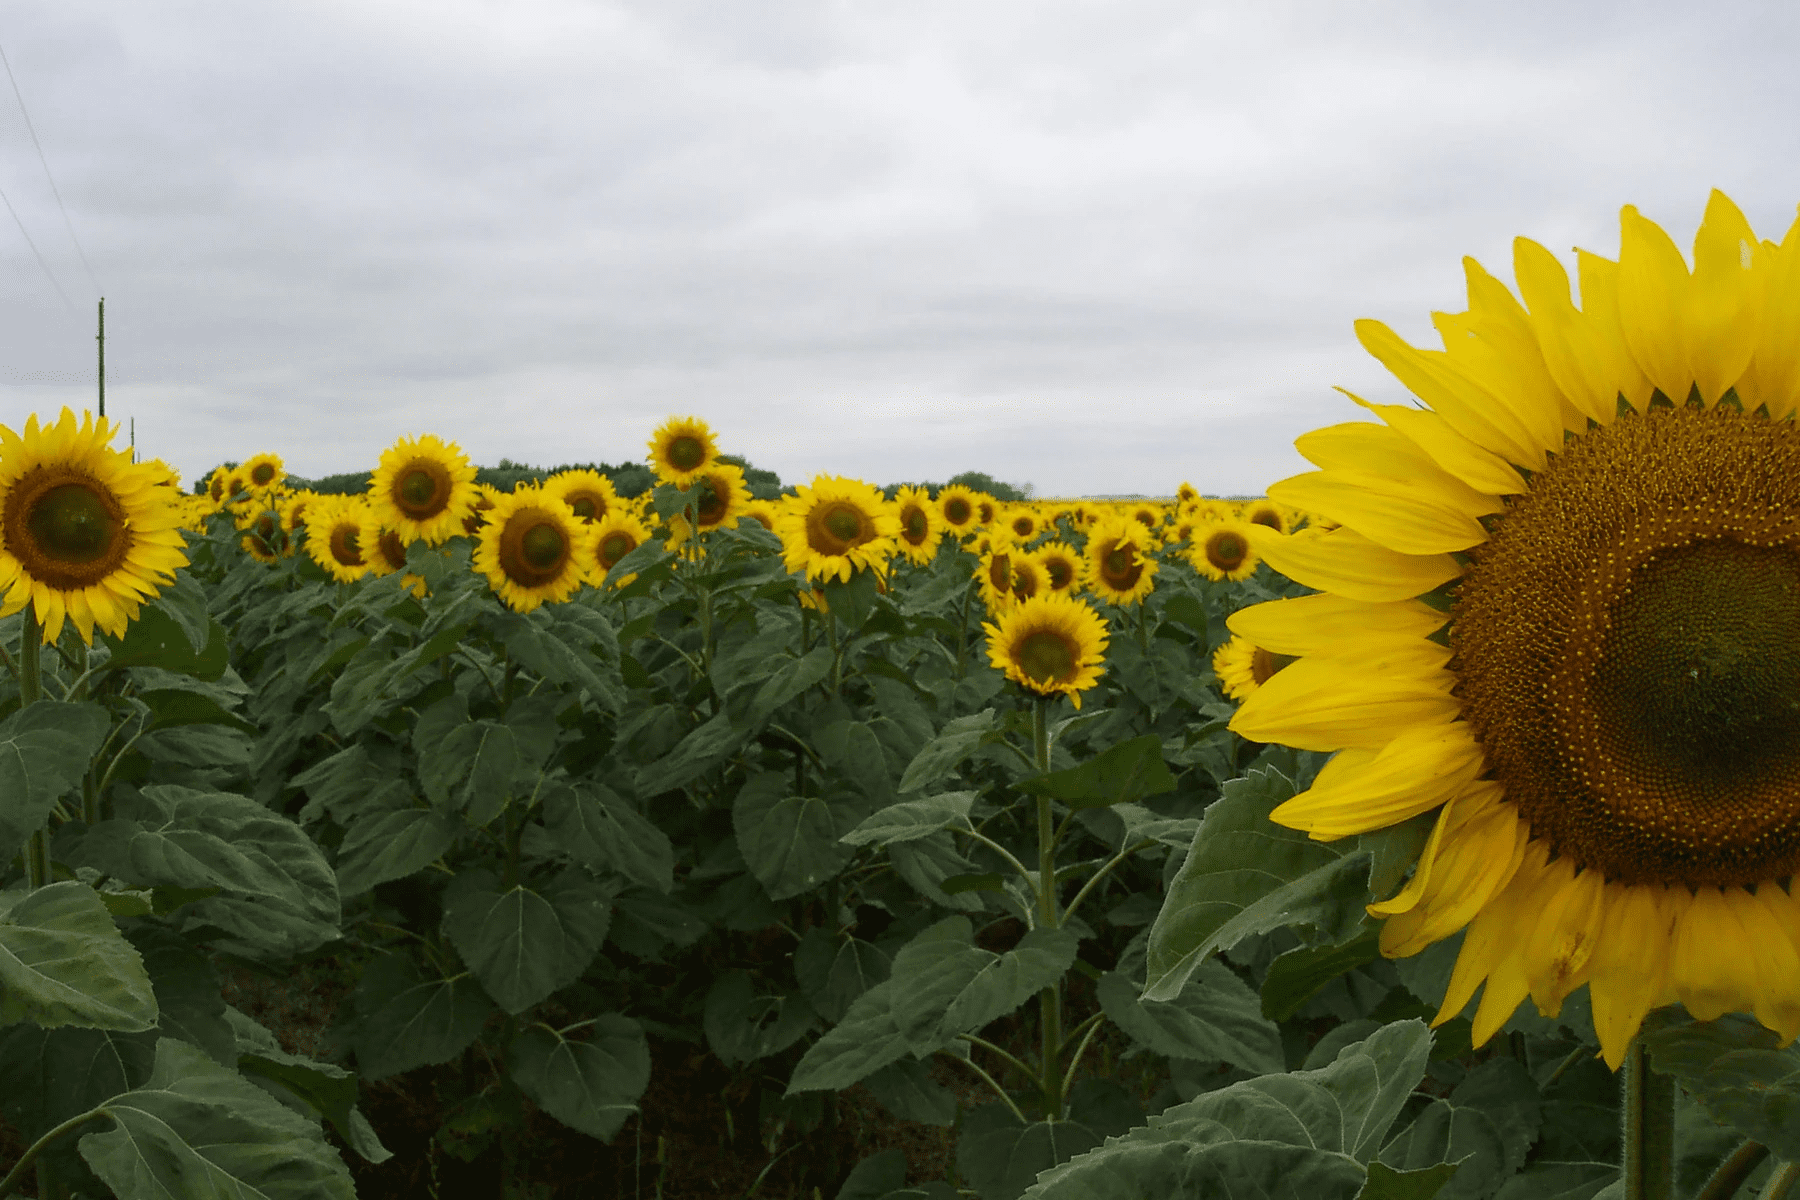 3.Simphome.com Grow Annual Sunflower